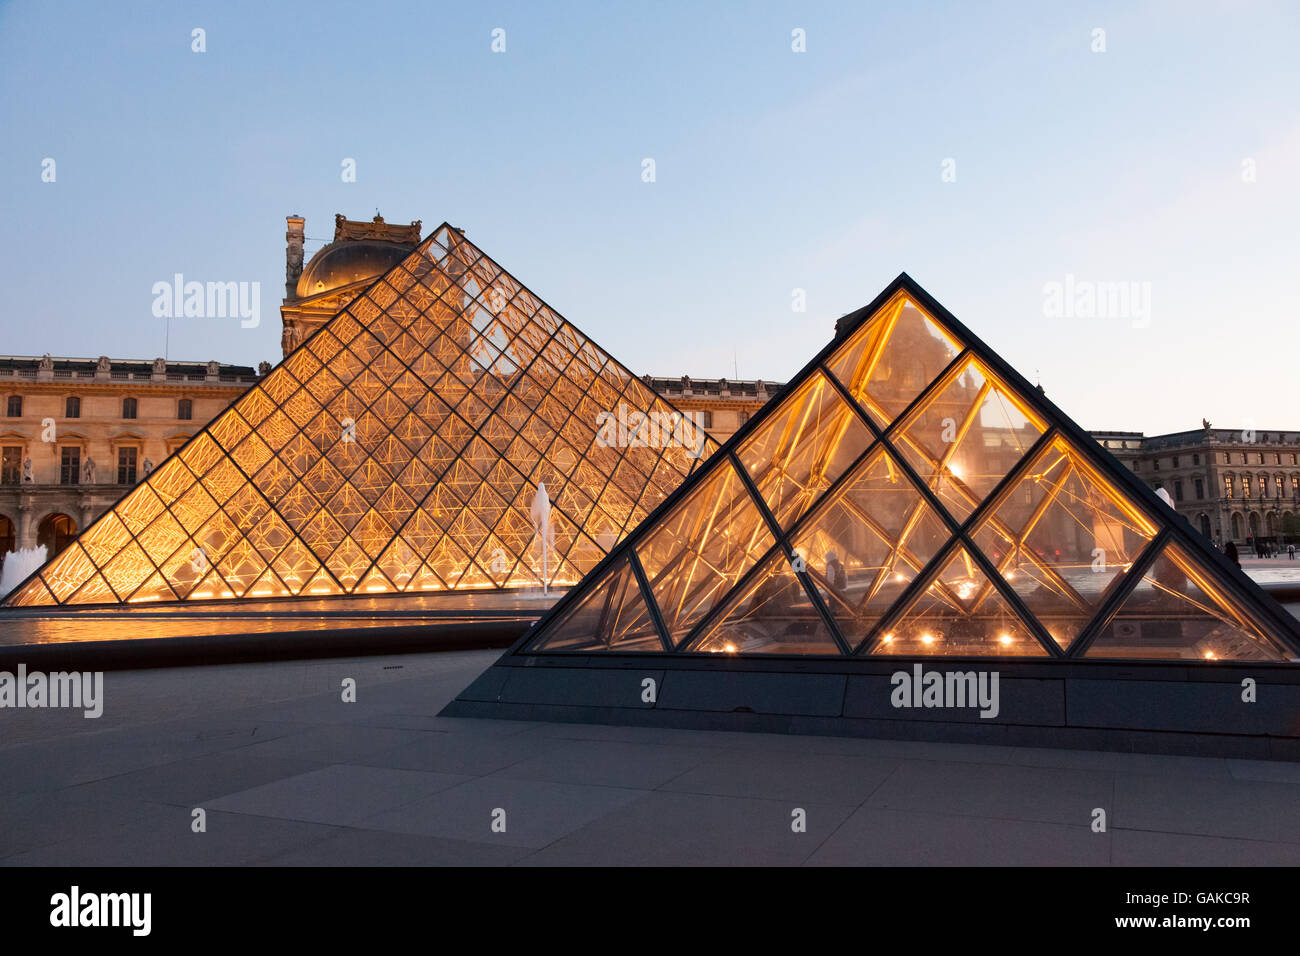 Le musée du Louvre a illuminé l'entrée en verre de la pyramide. Banque D'Images